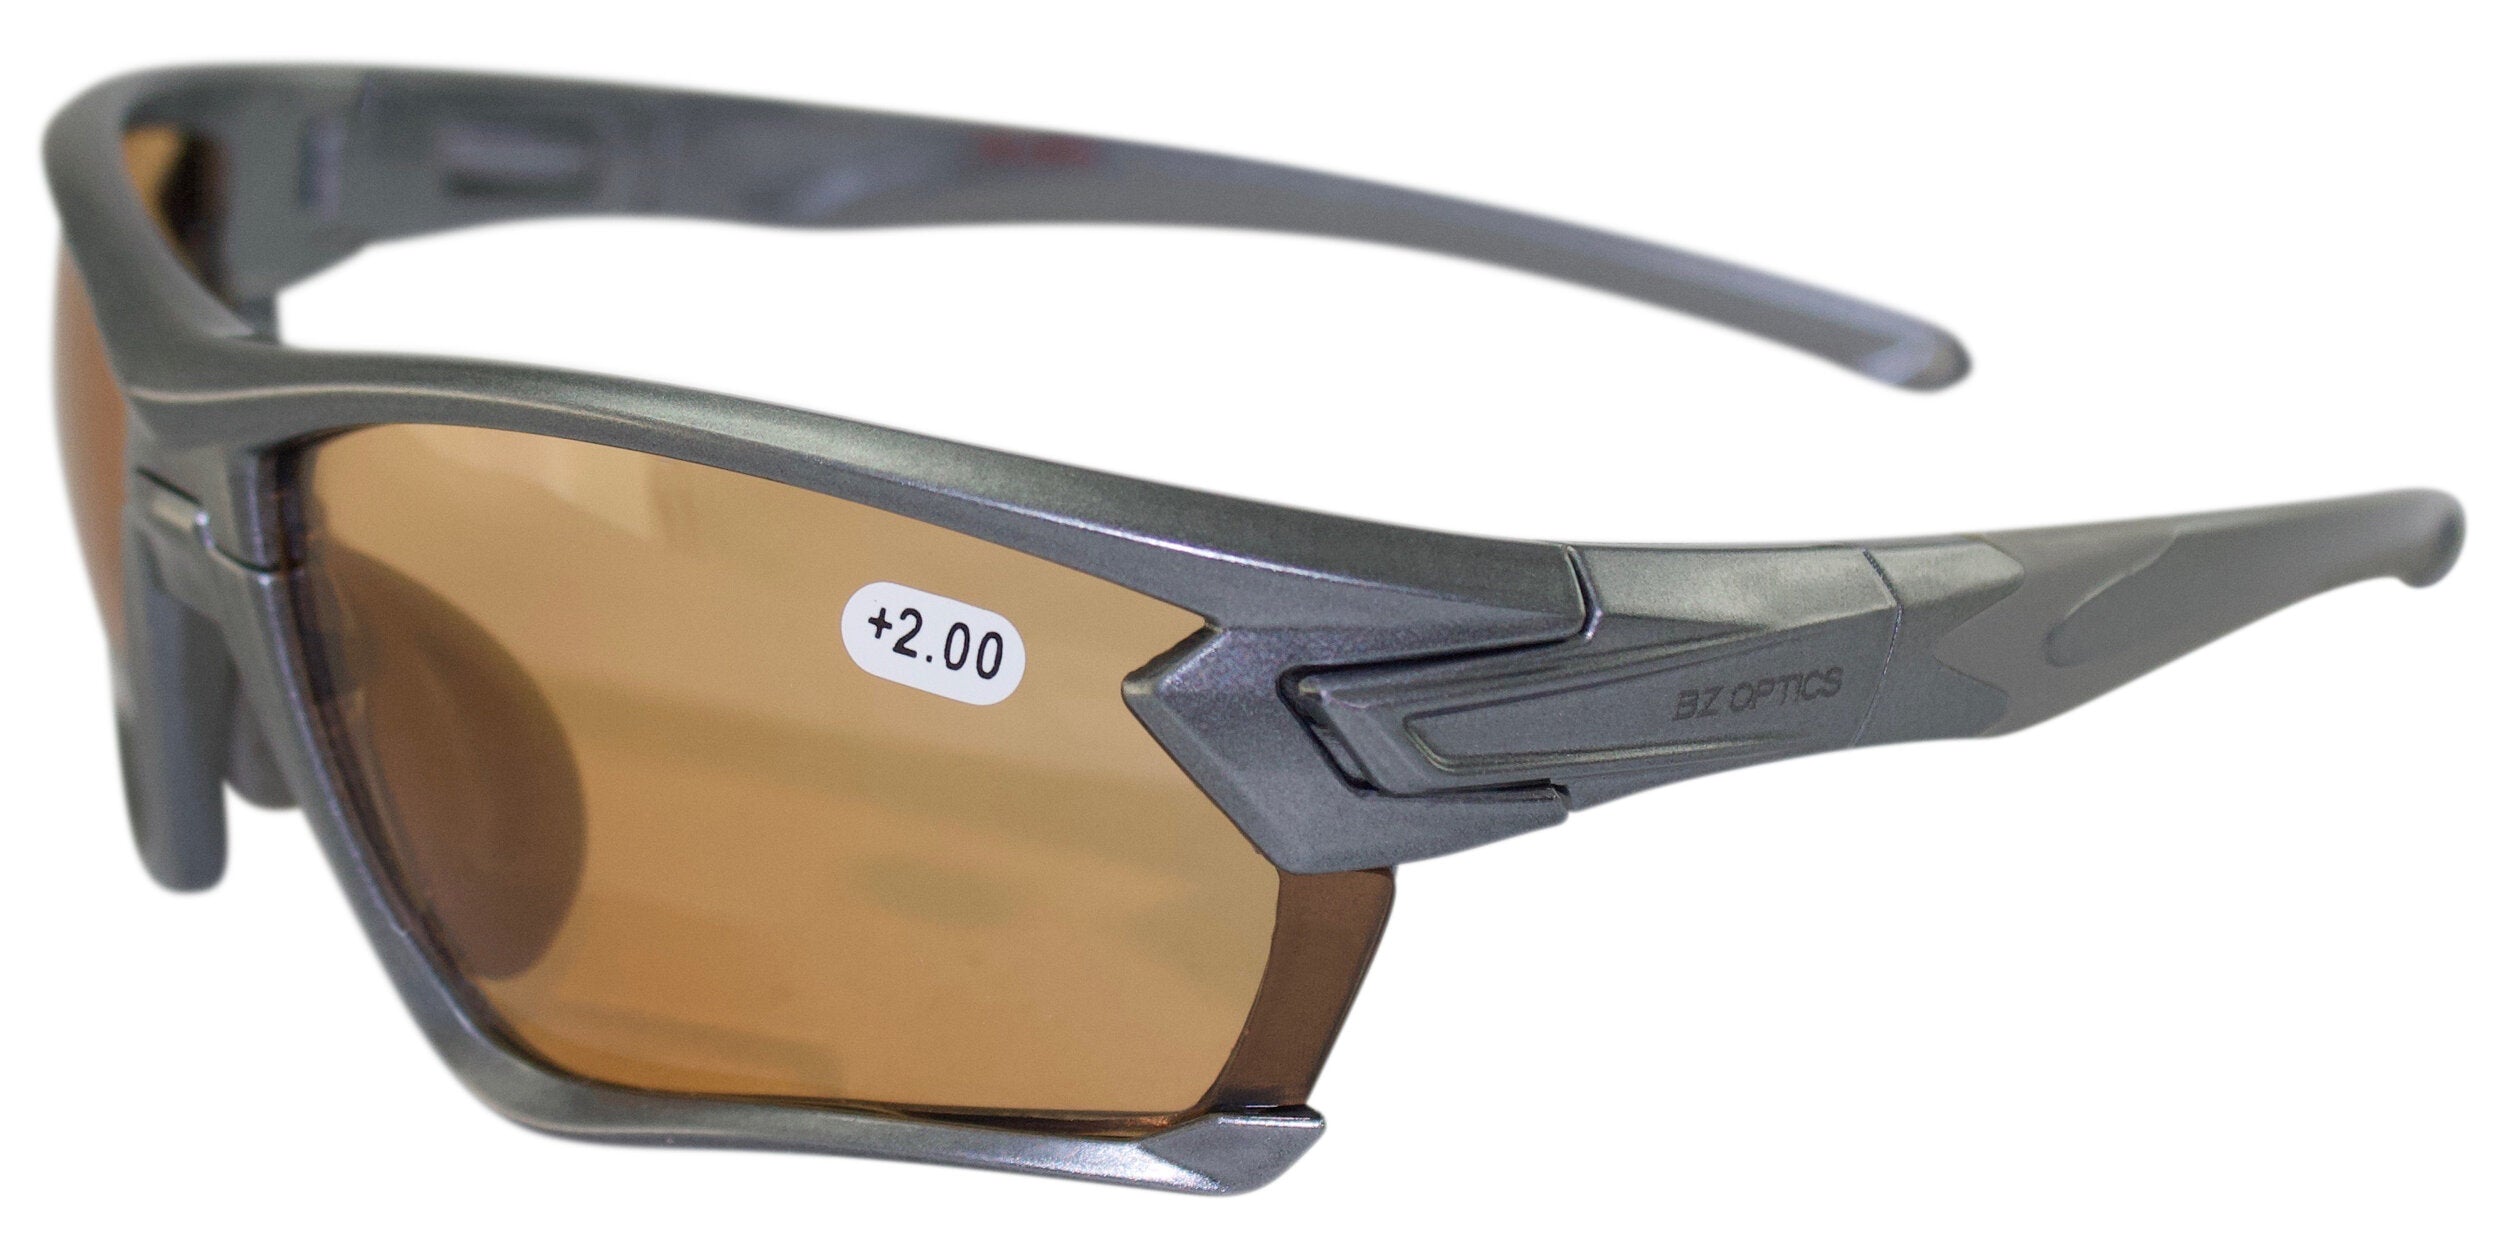 Sport- – GbR Sonnenbrille Gläser Tour bifocal Lesehilfen-DiKo selbsttönend braune